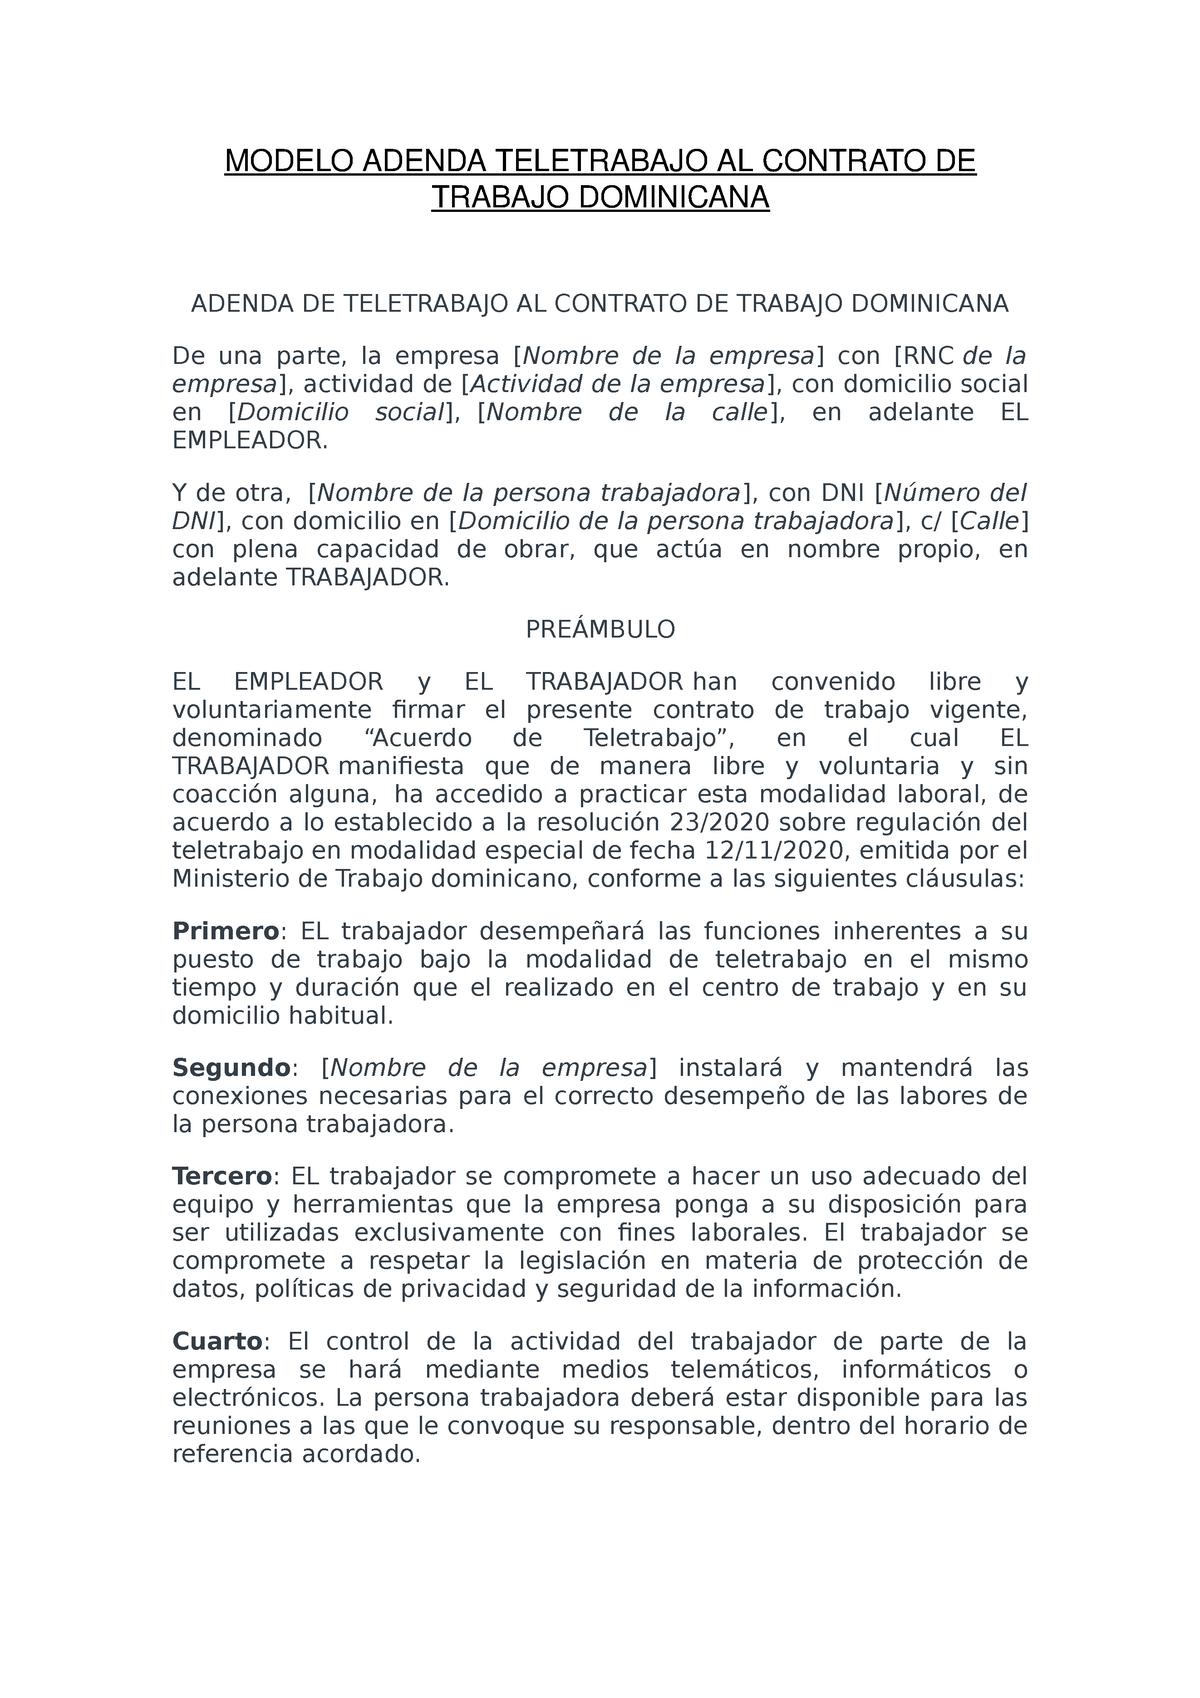 Modelo Adenda Teletrabajo AL Contrato DE Trabajo Dominicana - MODELO ADENDA  TELETRABAJO AL CONTRATO - Studocu